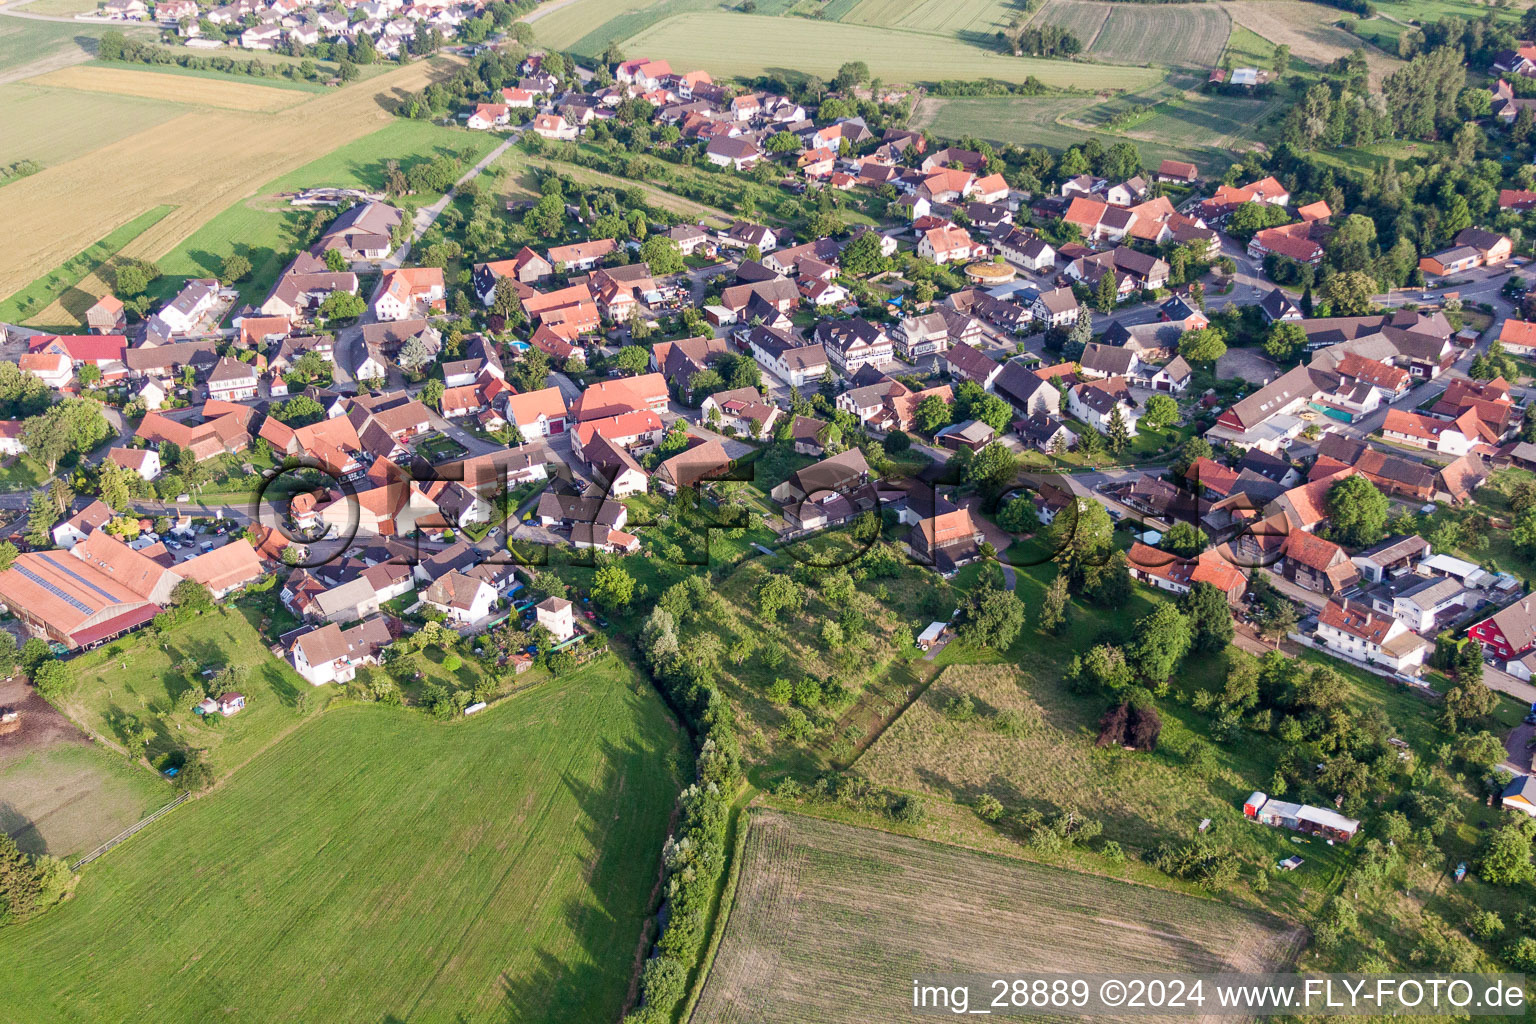 Luftbild von Dorf - Ansicht im Ortsteil Linx in Rheinau im Bundesland Baden-Württemberg, Deutschland